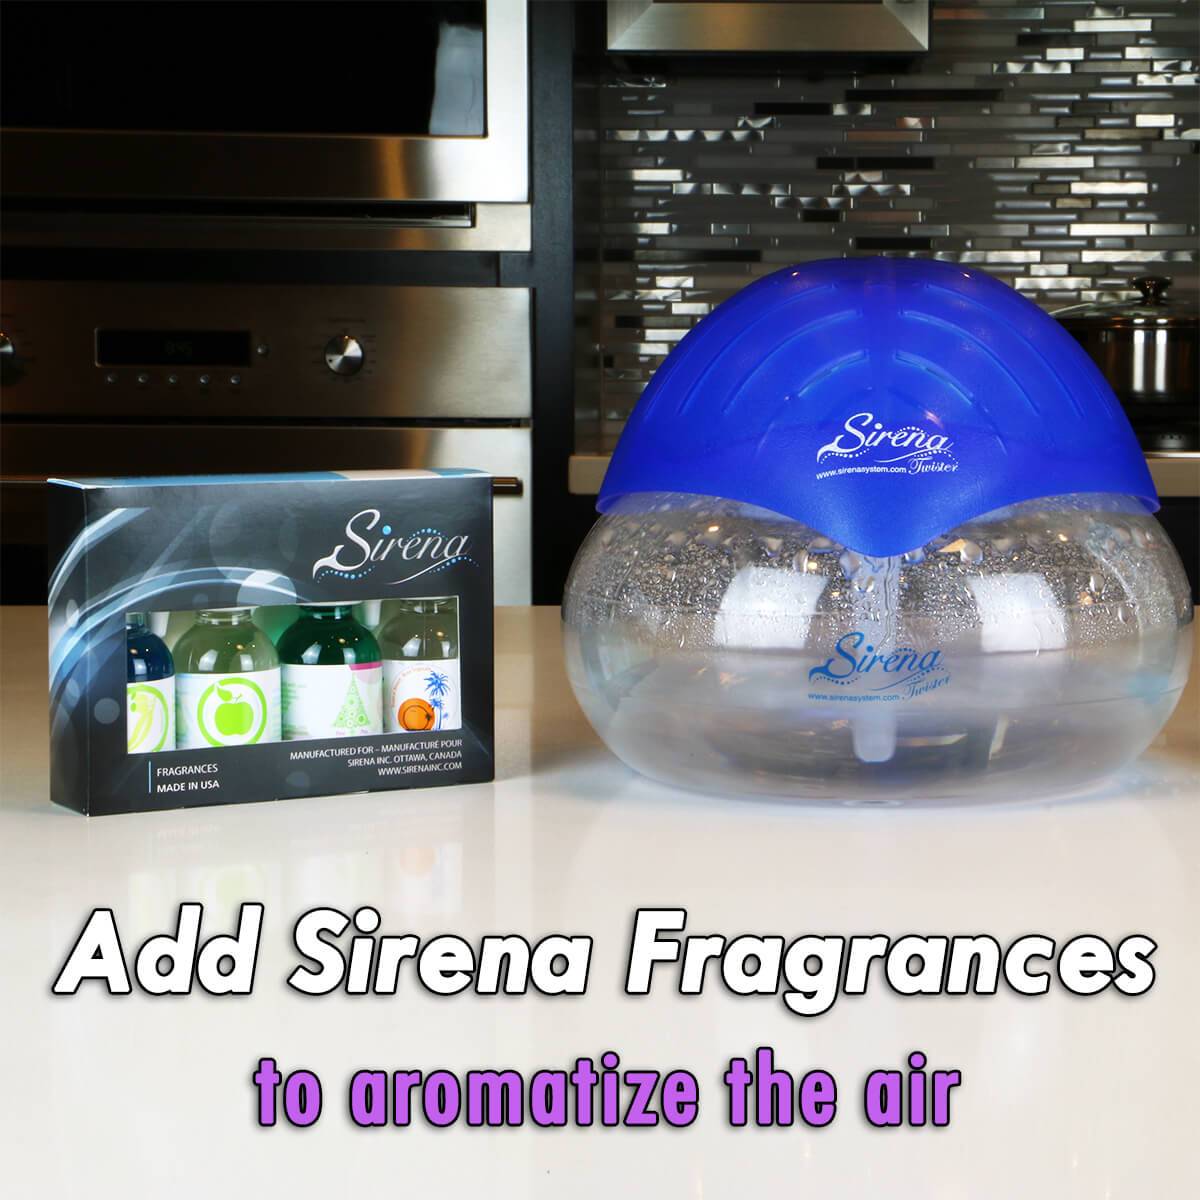 Sirena Twister Air Aromatizer – SirenaClean